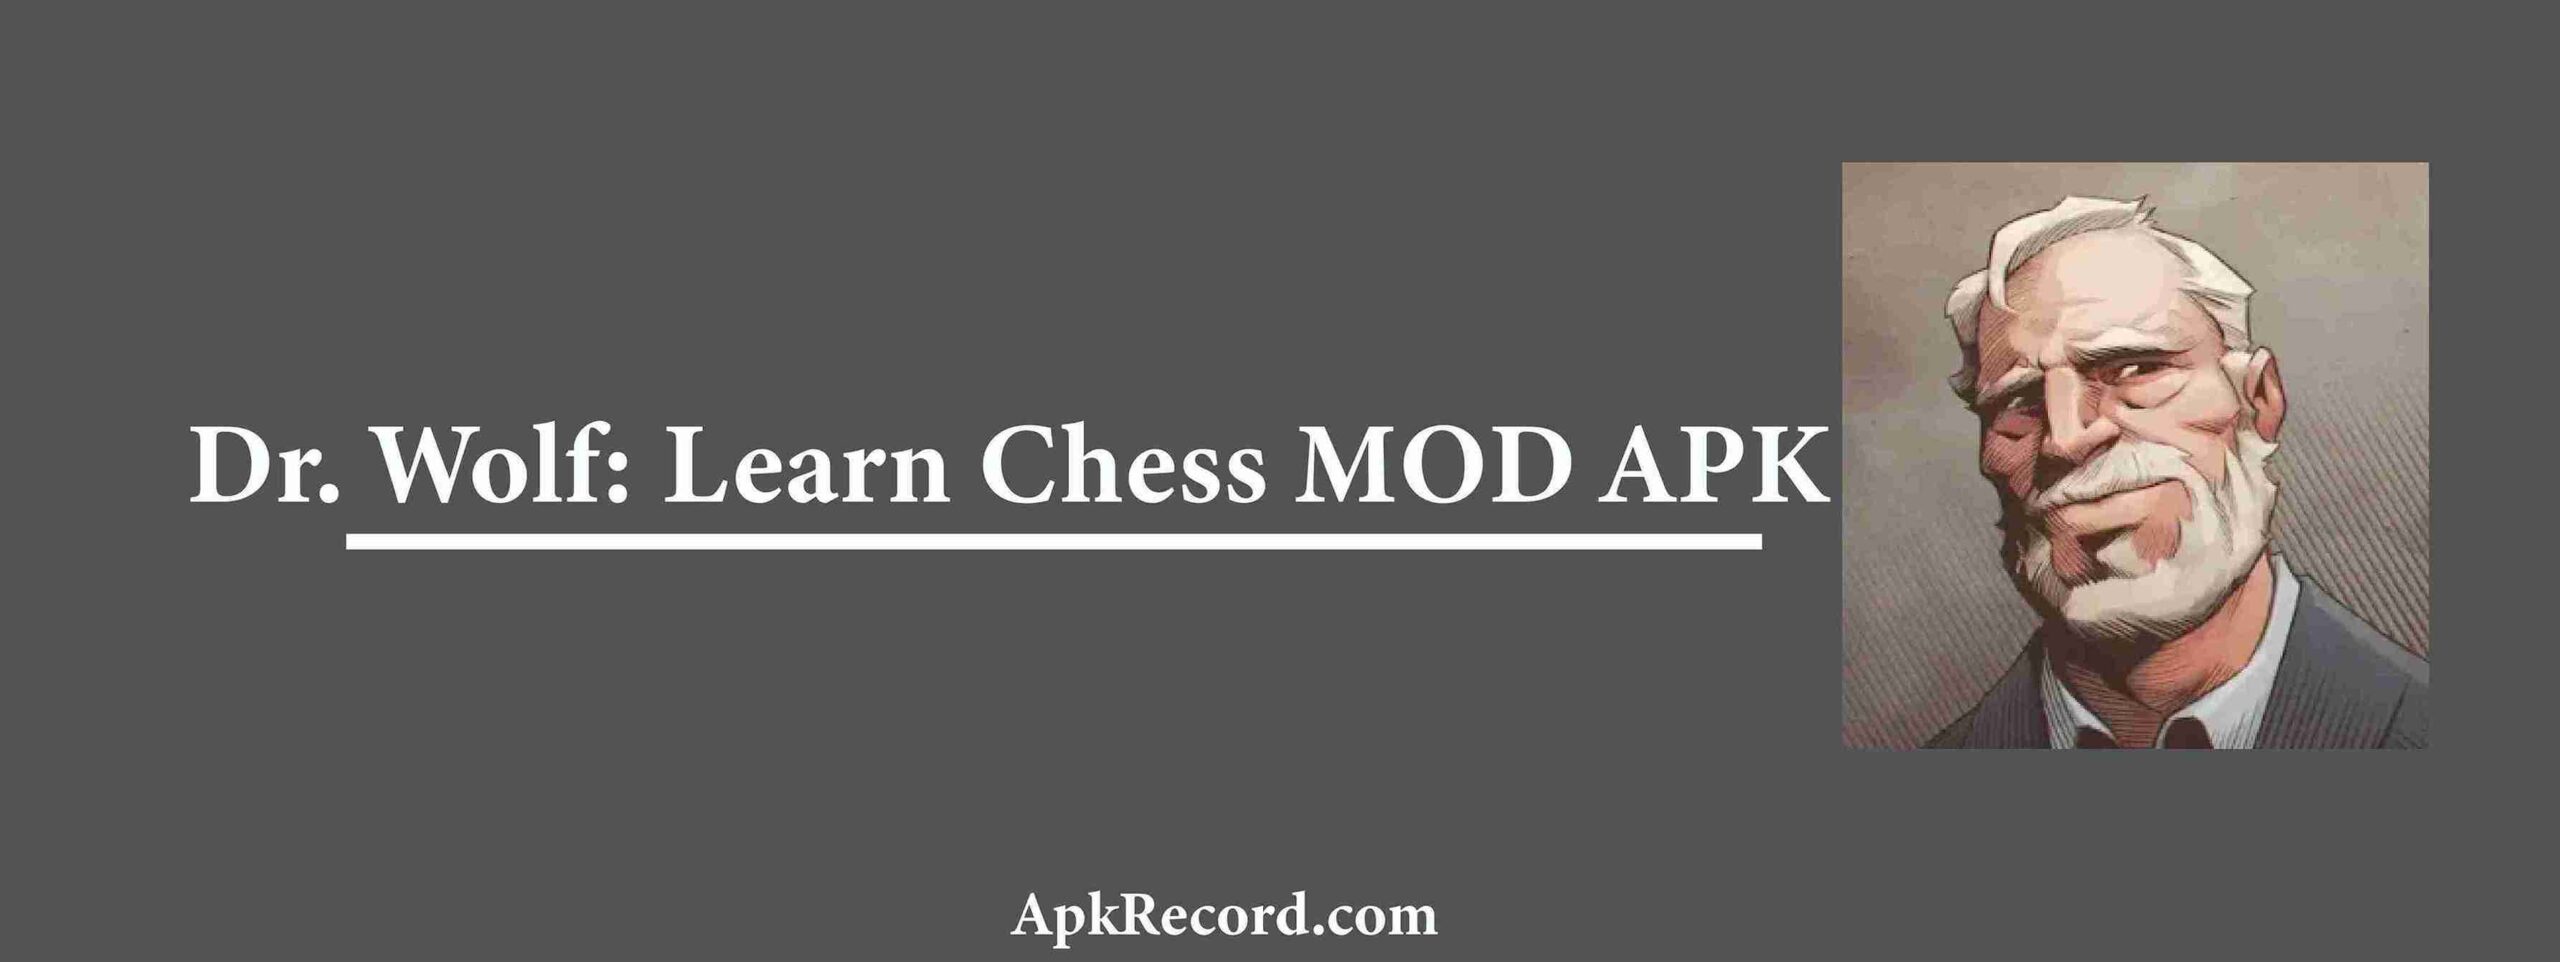 Dr Wolf Learn Chess MOD APK V1.44.1